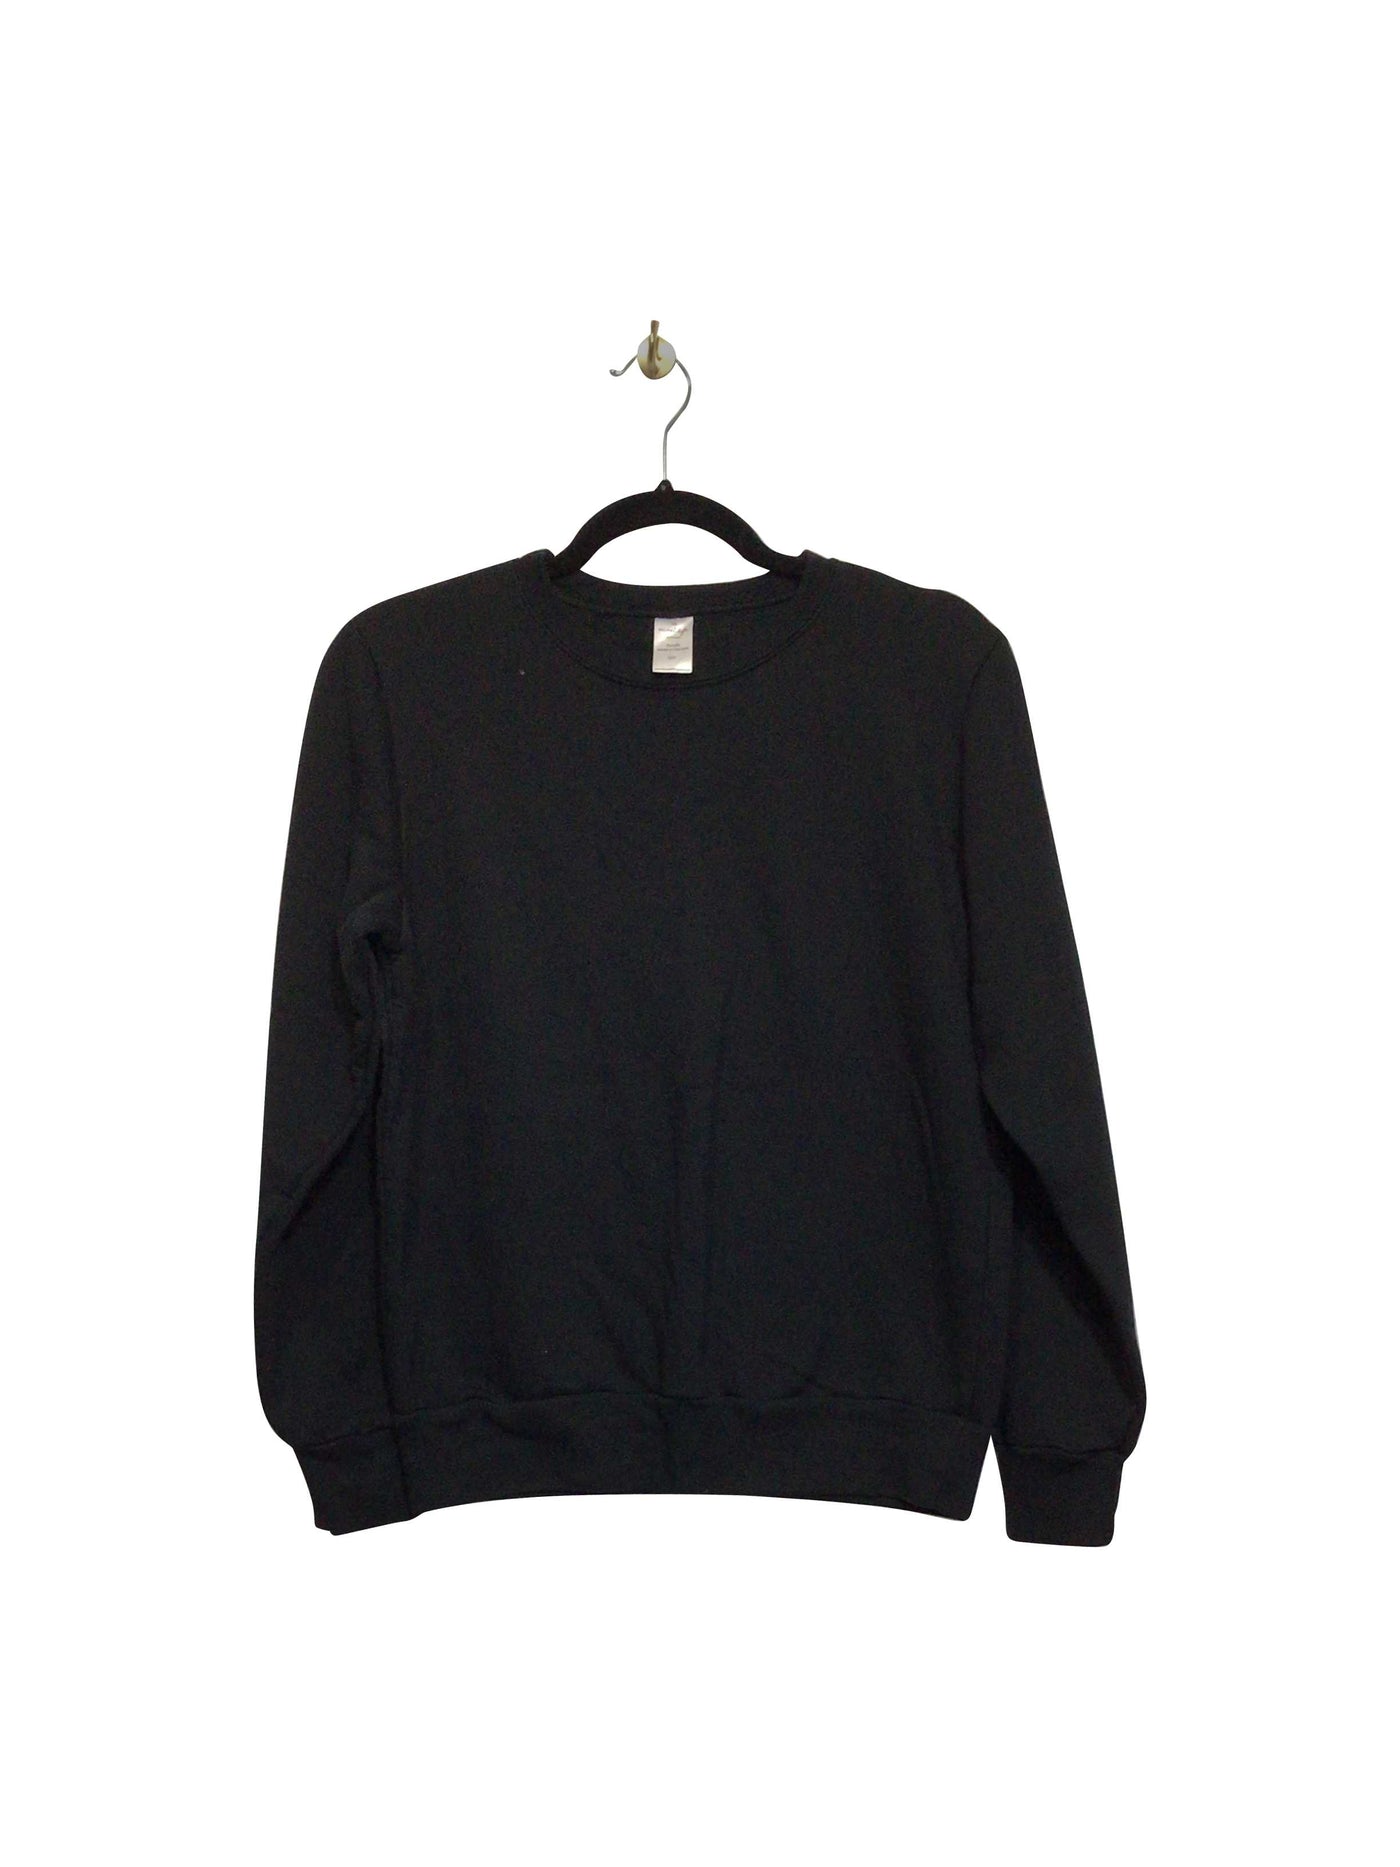 THE SWEET LIFE Regular fit Sweatshirt in Black  -  12Y  15.60 Koop